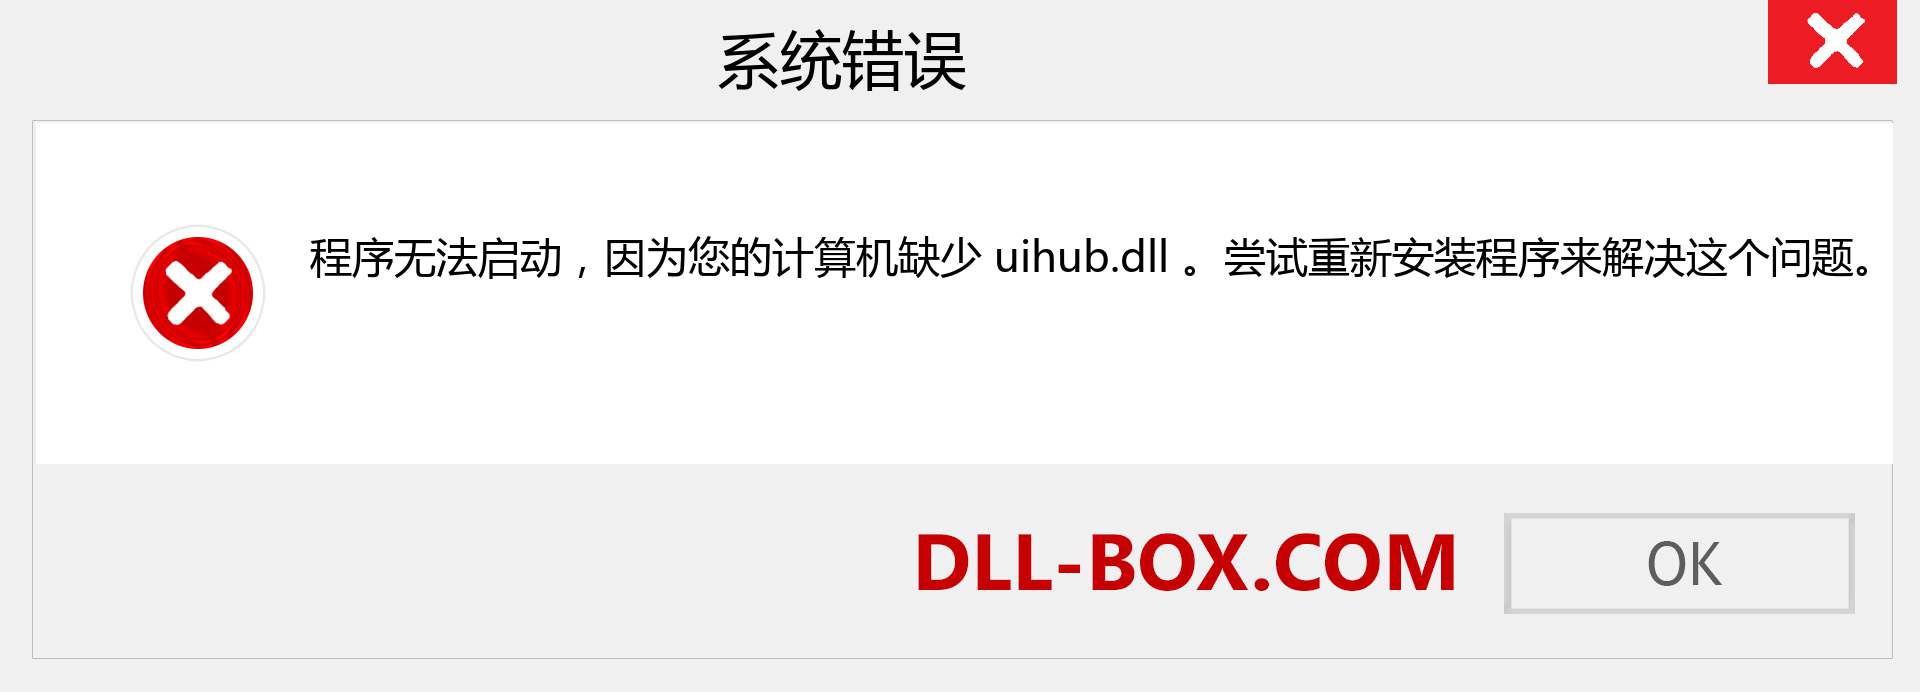 uihub.dll 文件丢失？。 适用于 Windows 7、8、10 的下载 - 修复 Windows、照片、图像上的 uihub dll 丢失错误